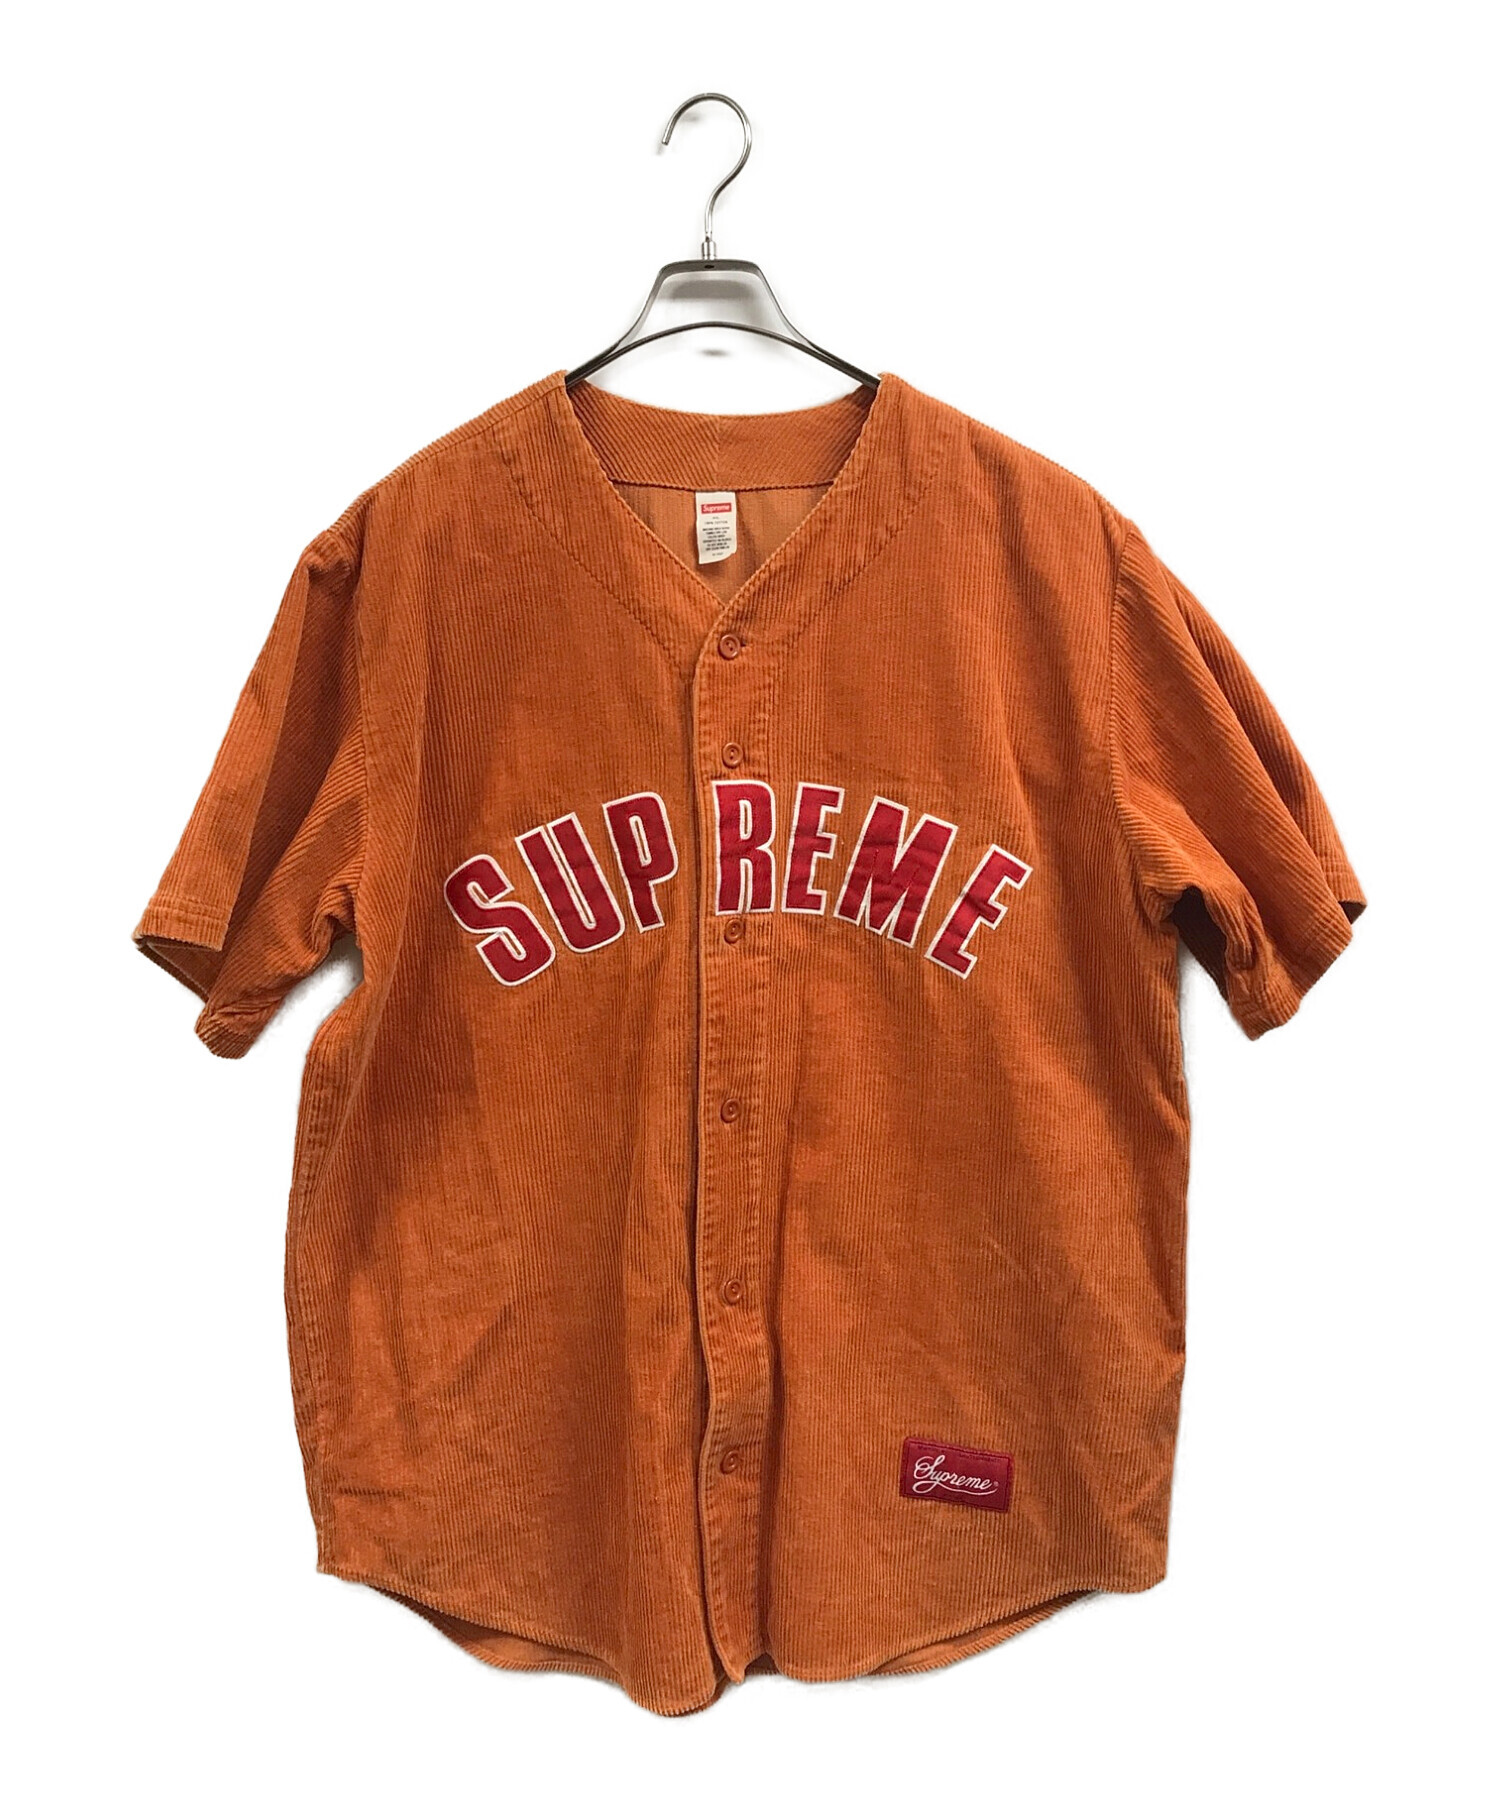 名作 supreme® baseball shirts 初期シュプリーム